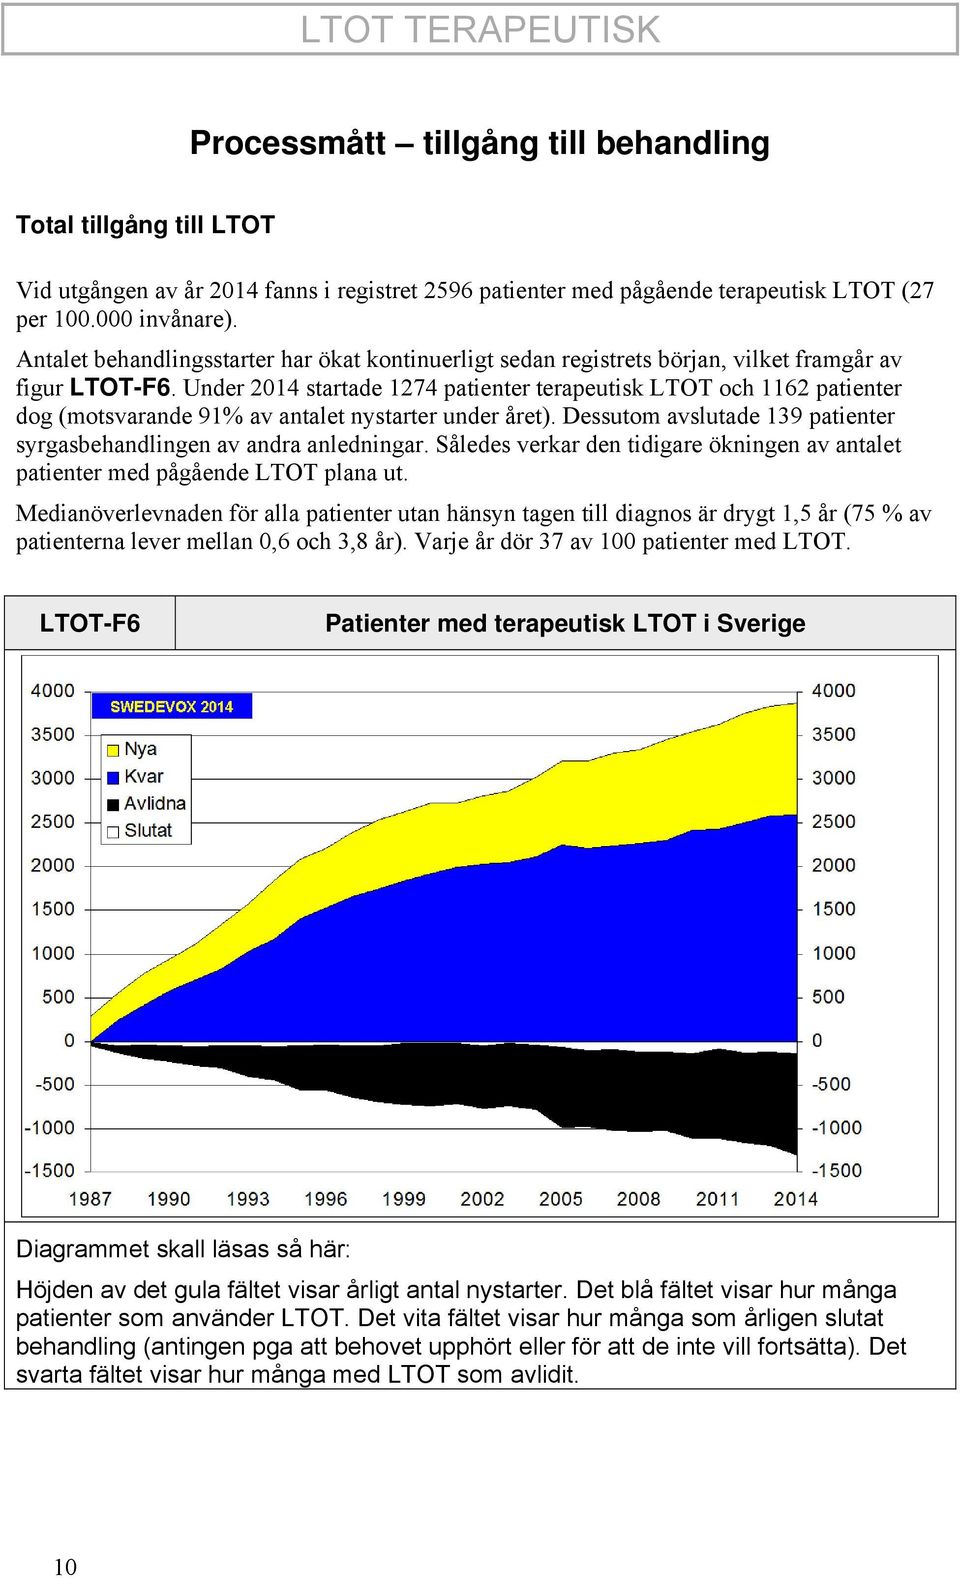 Under 2014 startade 1274 patienter terapeutisk LTOT och 1162 patienter dog (motsvarande 91% av antalet nystarter under året). Dessutom avslutade 139 patienter syrgasbehandlingen av andra anledningar.